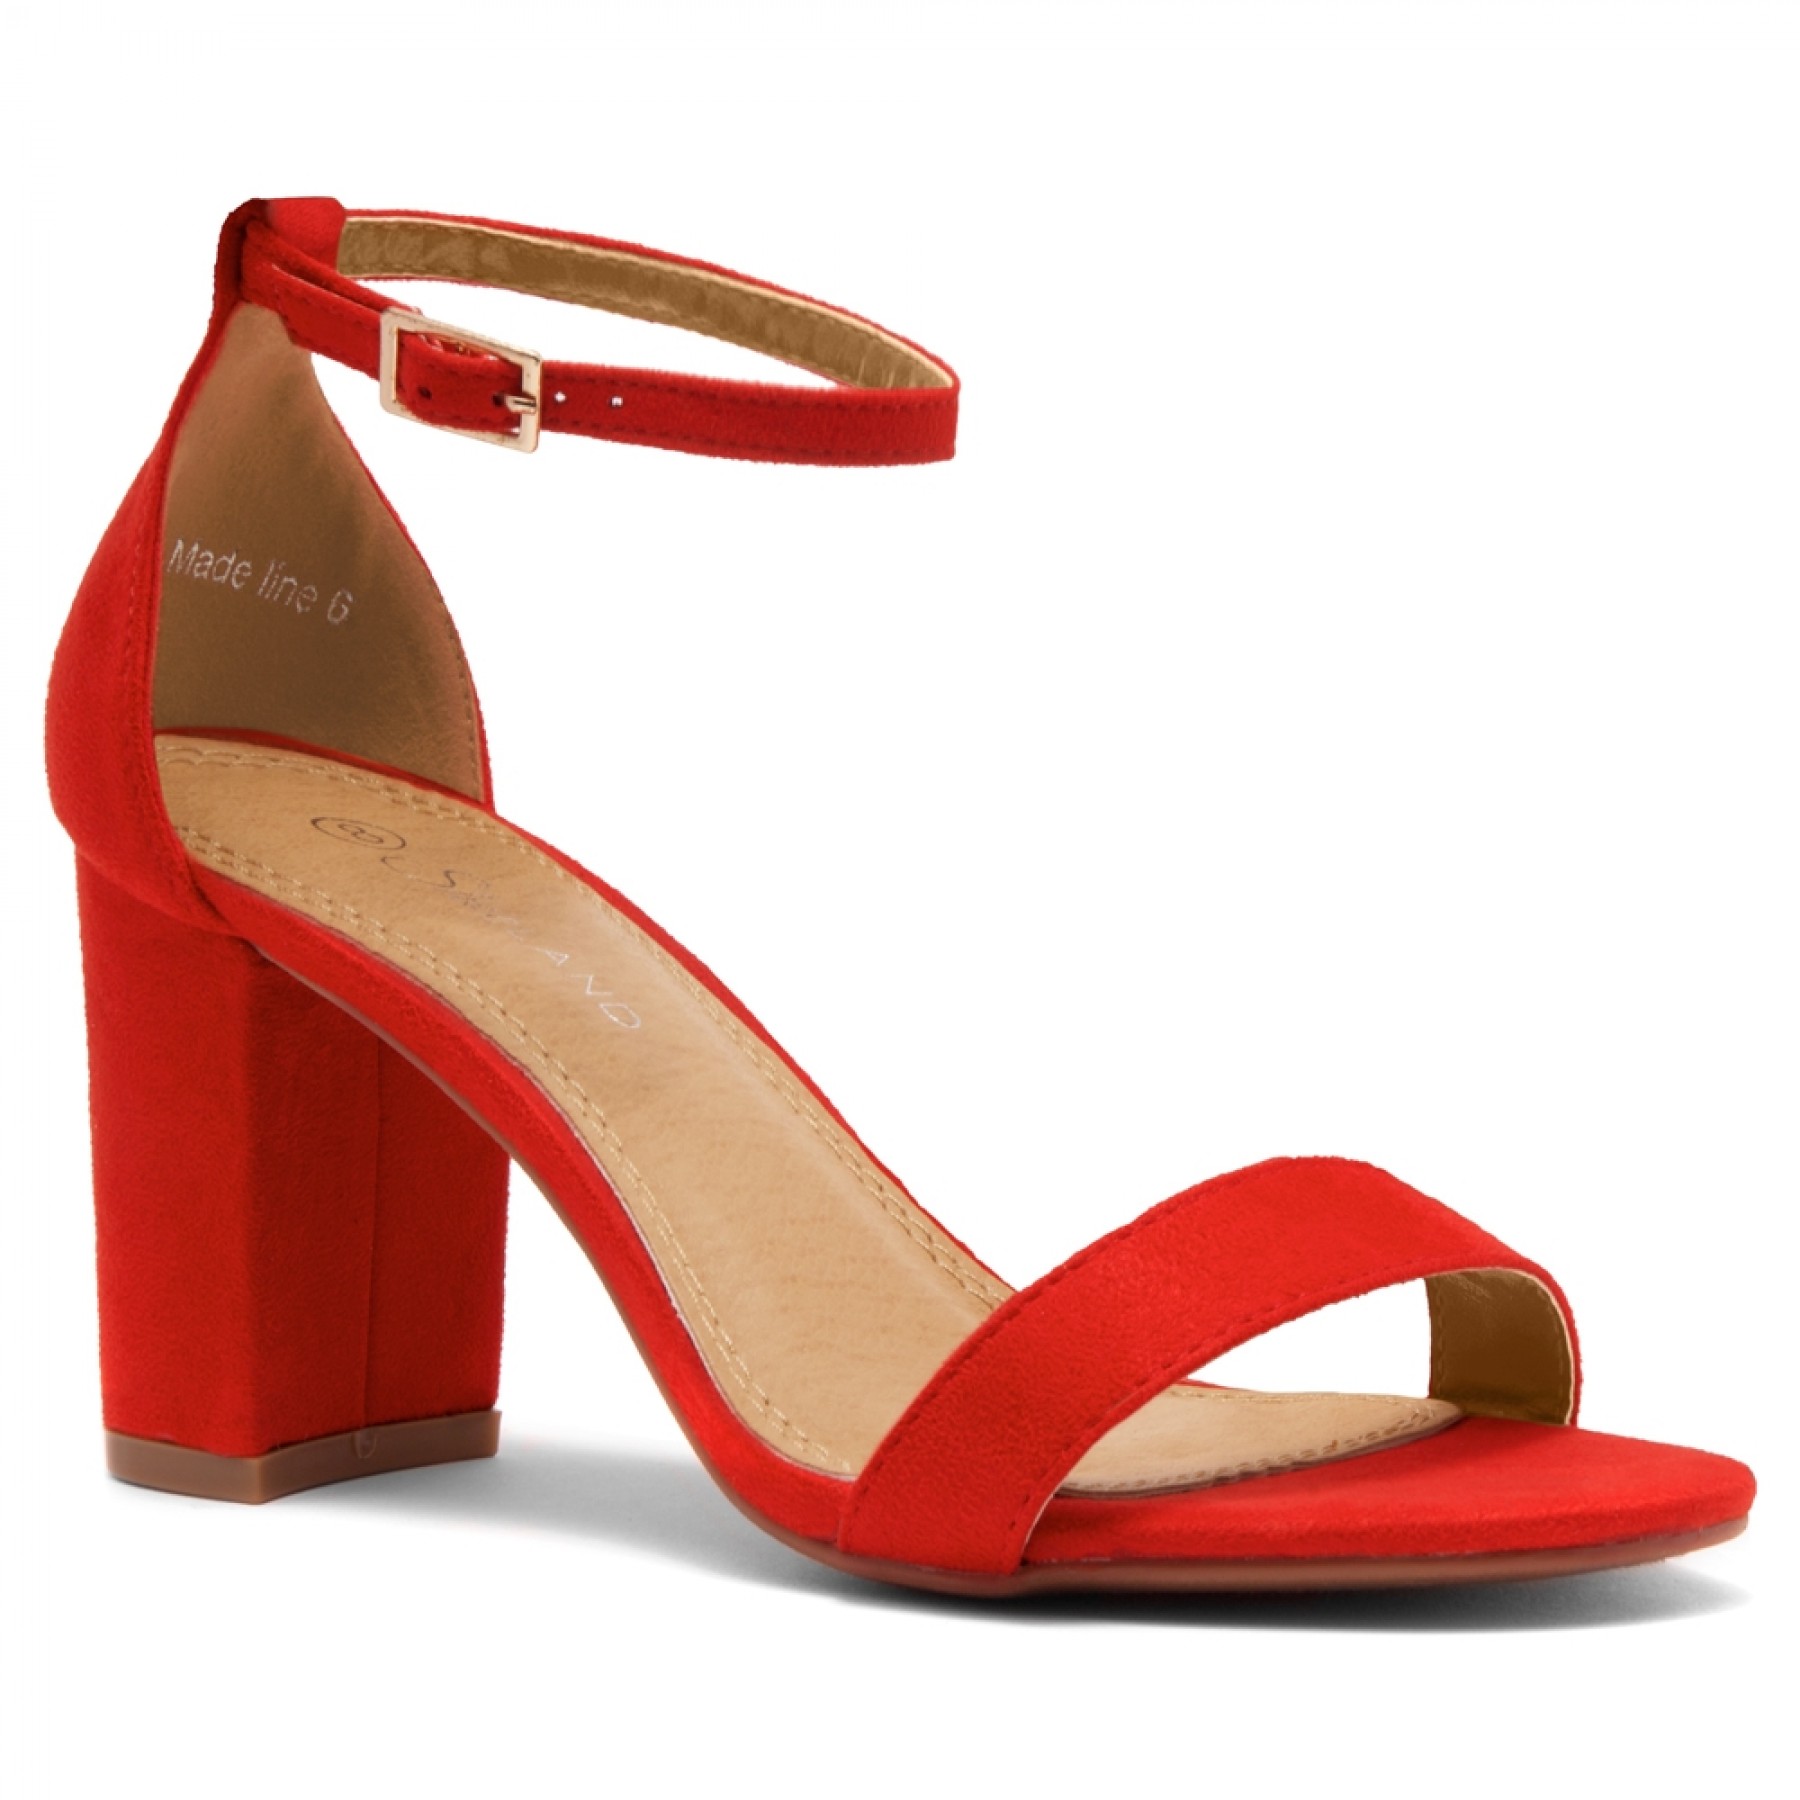 Red Dress Sandals Low Heel - Sandal Design